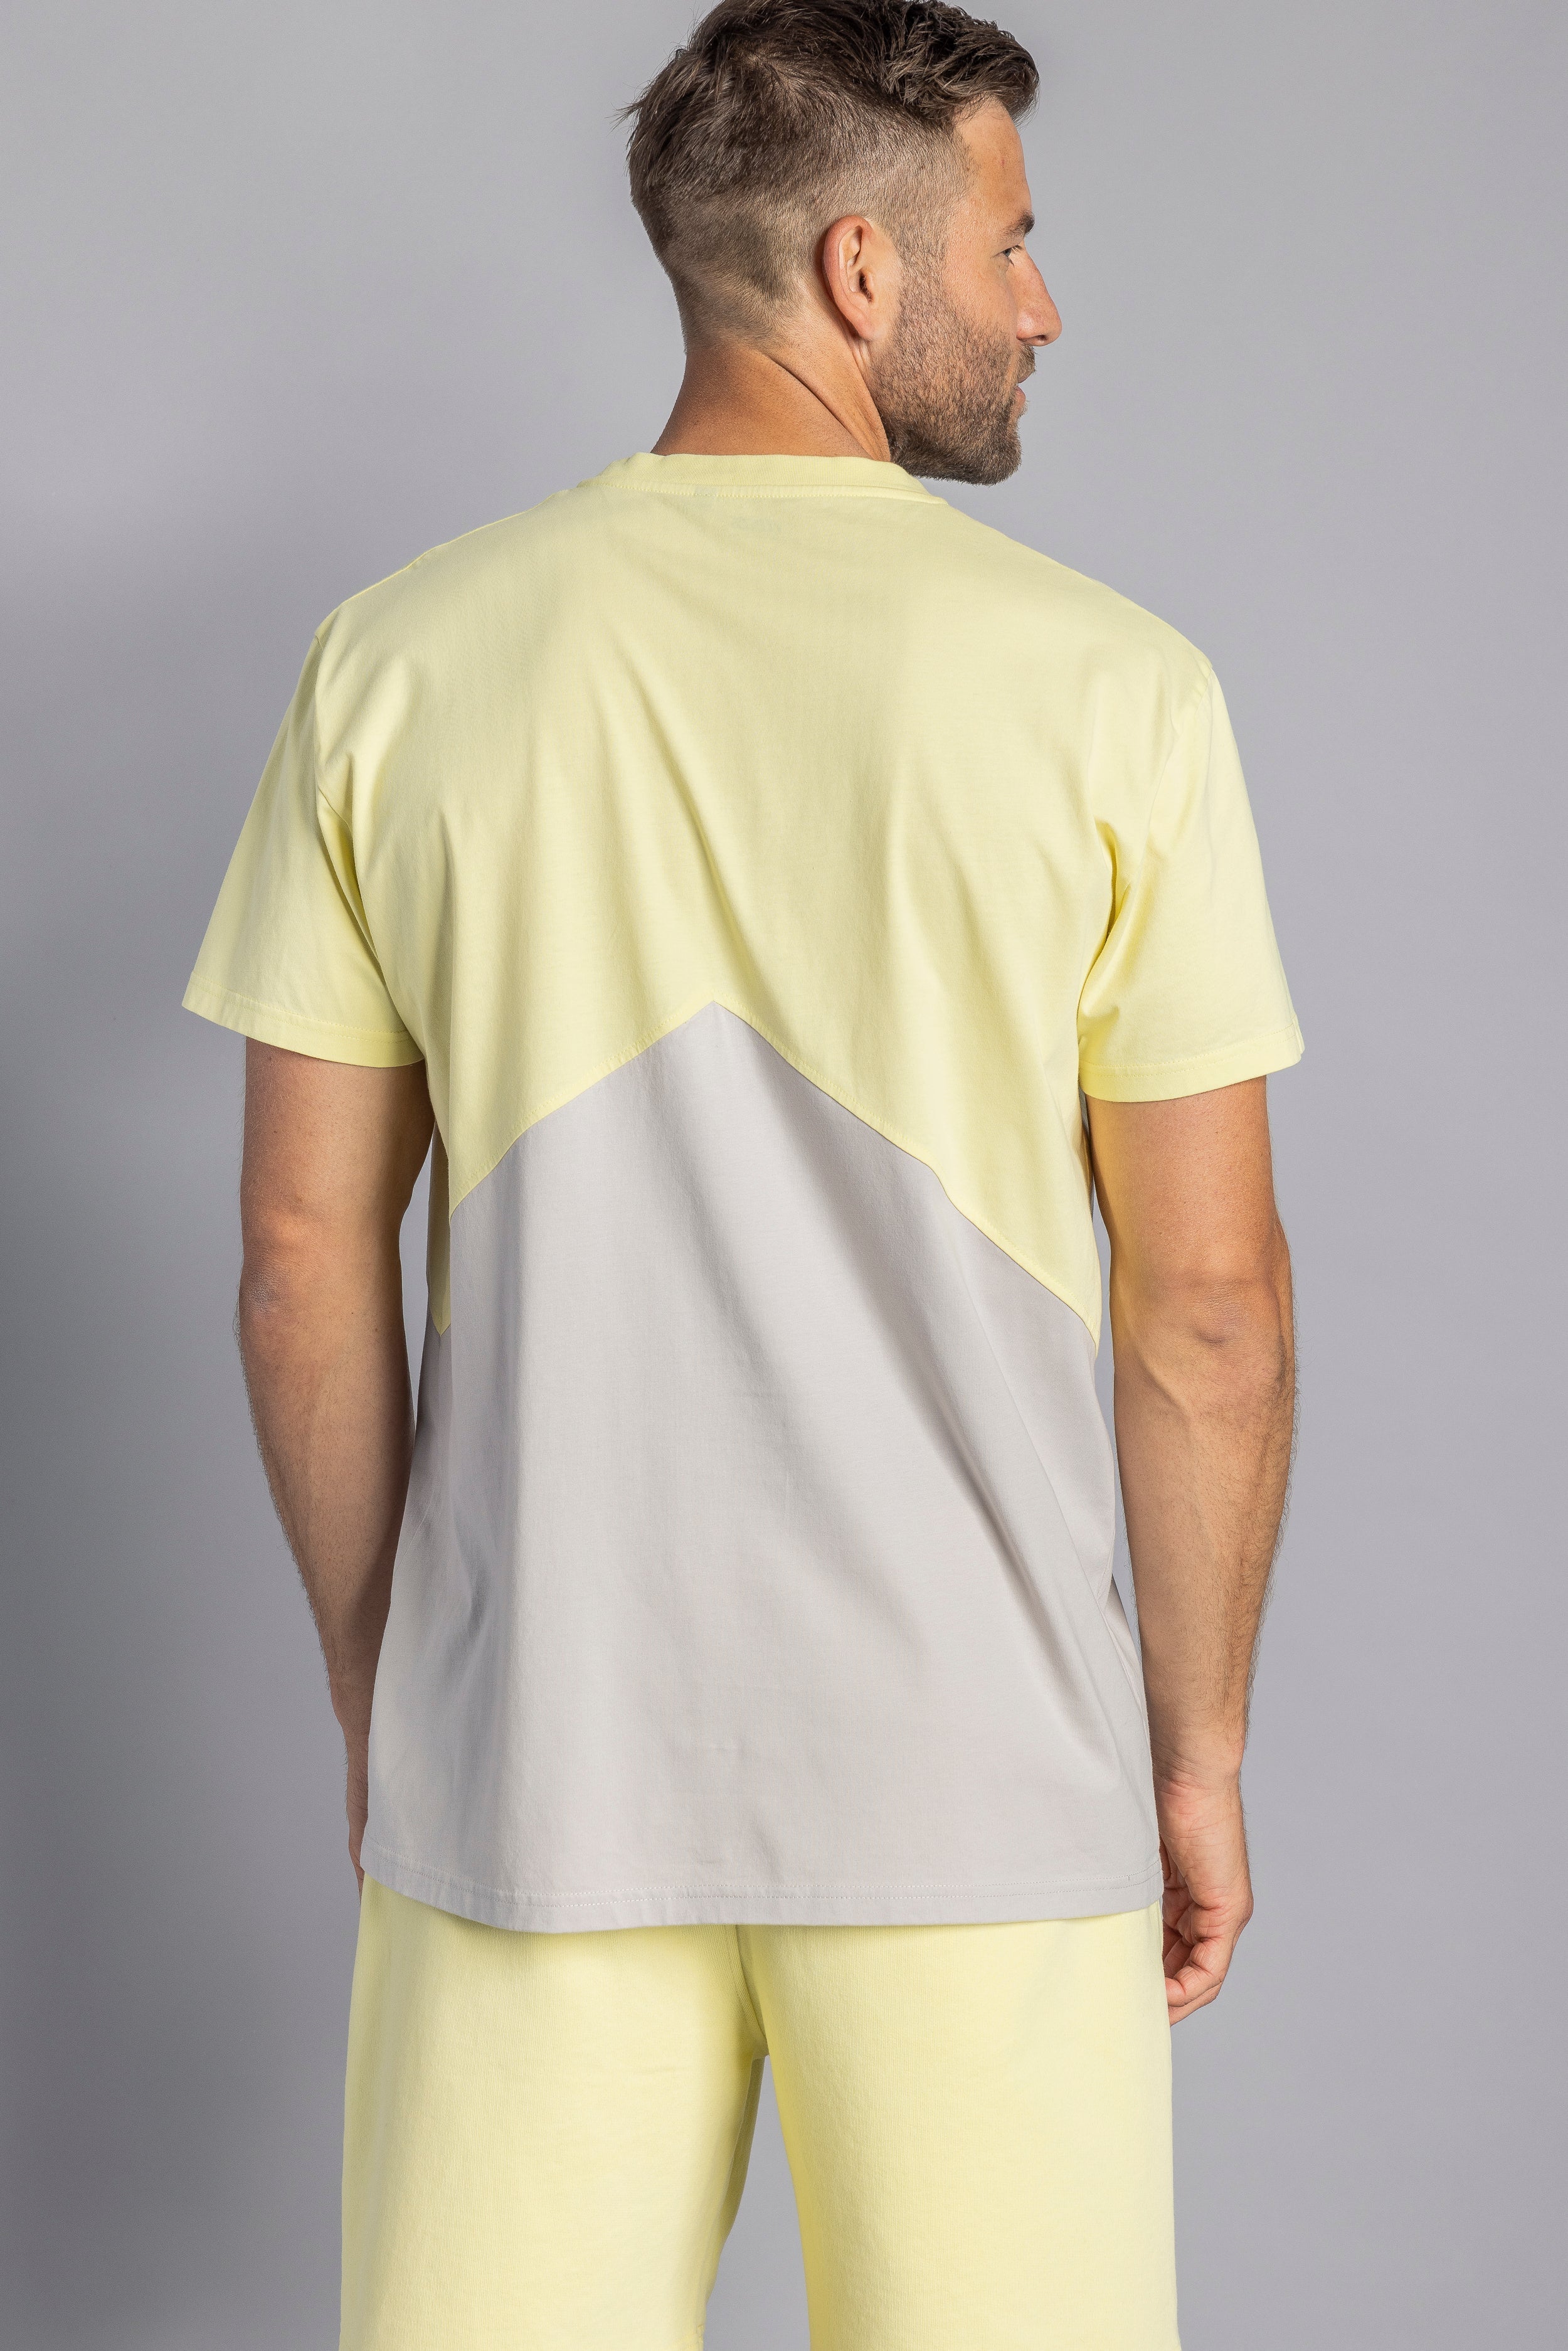 Buntes T-Shirt Zig Zag Standard aus 100% Bio-Baumwolle von DIRTS